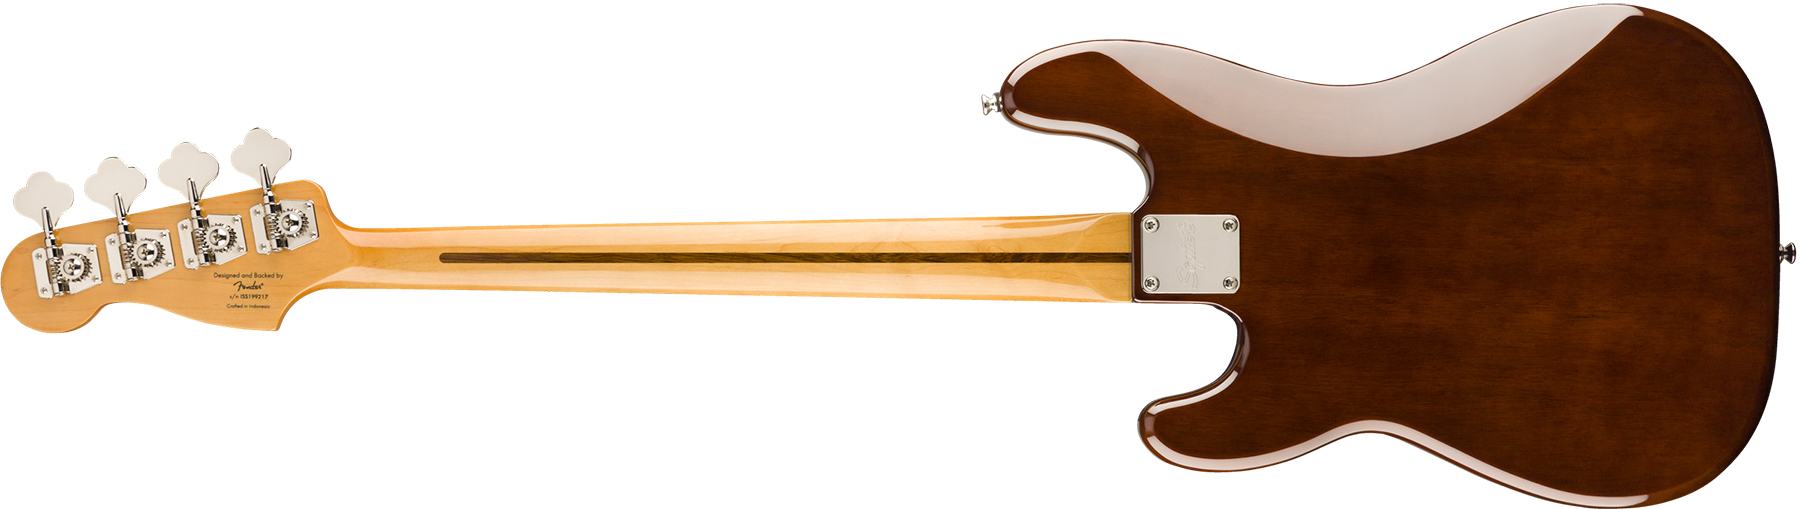 Squier Precision Bass '70s Classic Vibe 2019 Mn - Walnut - Bajo eléctrico de cuerpo sólido - Variation 1